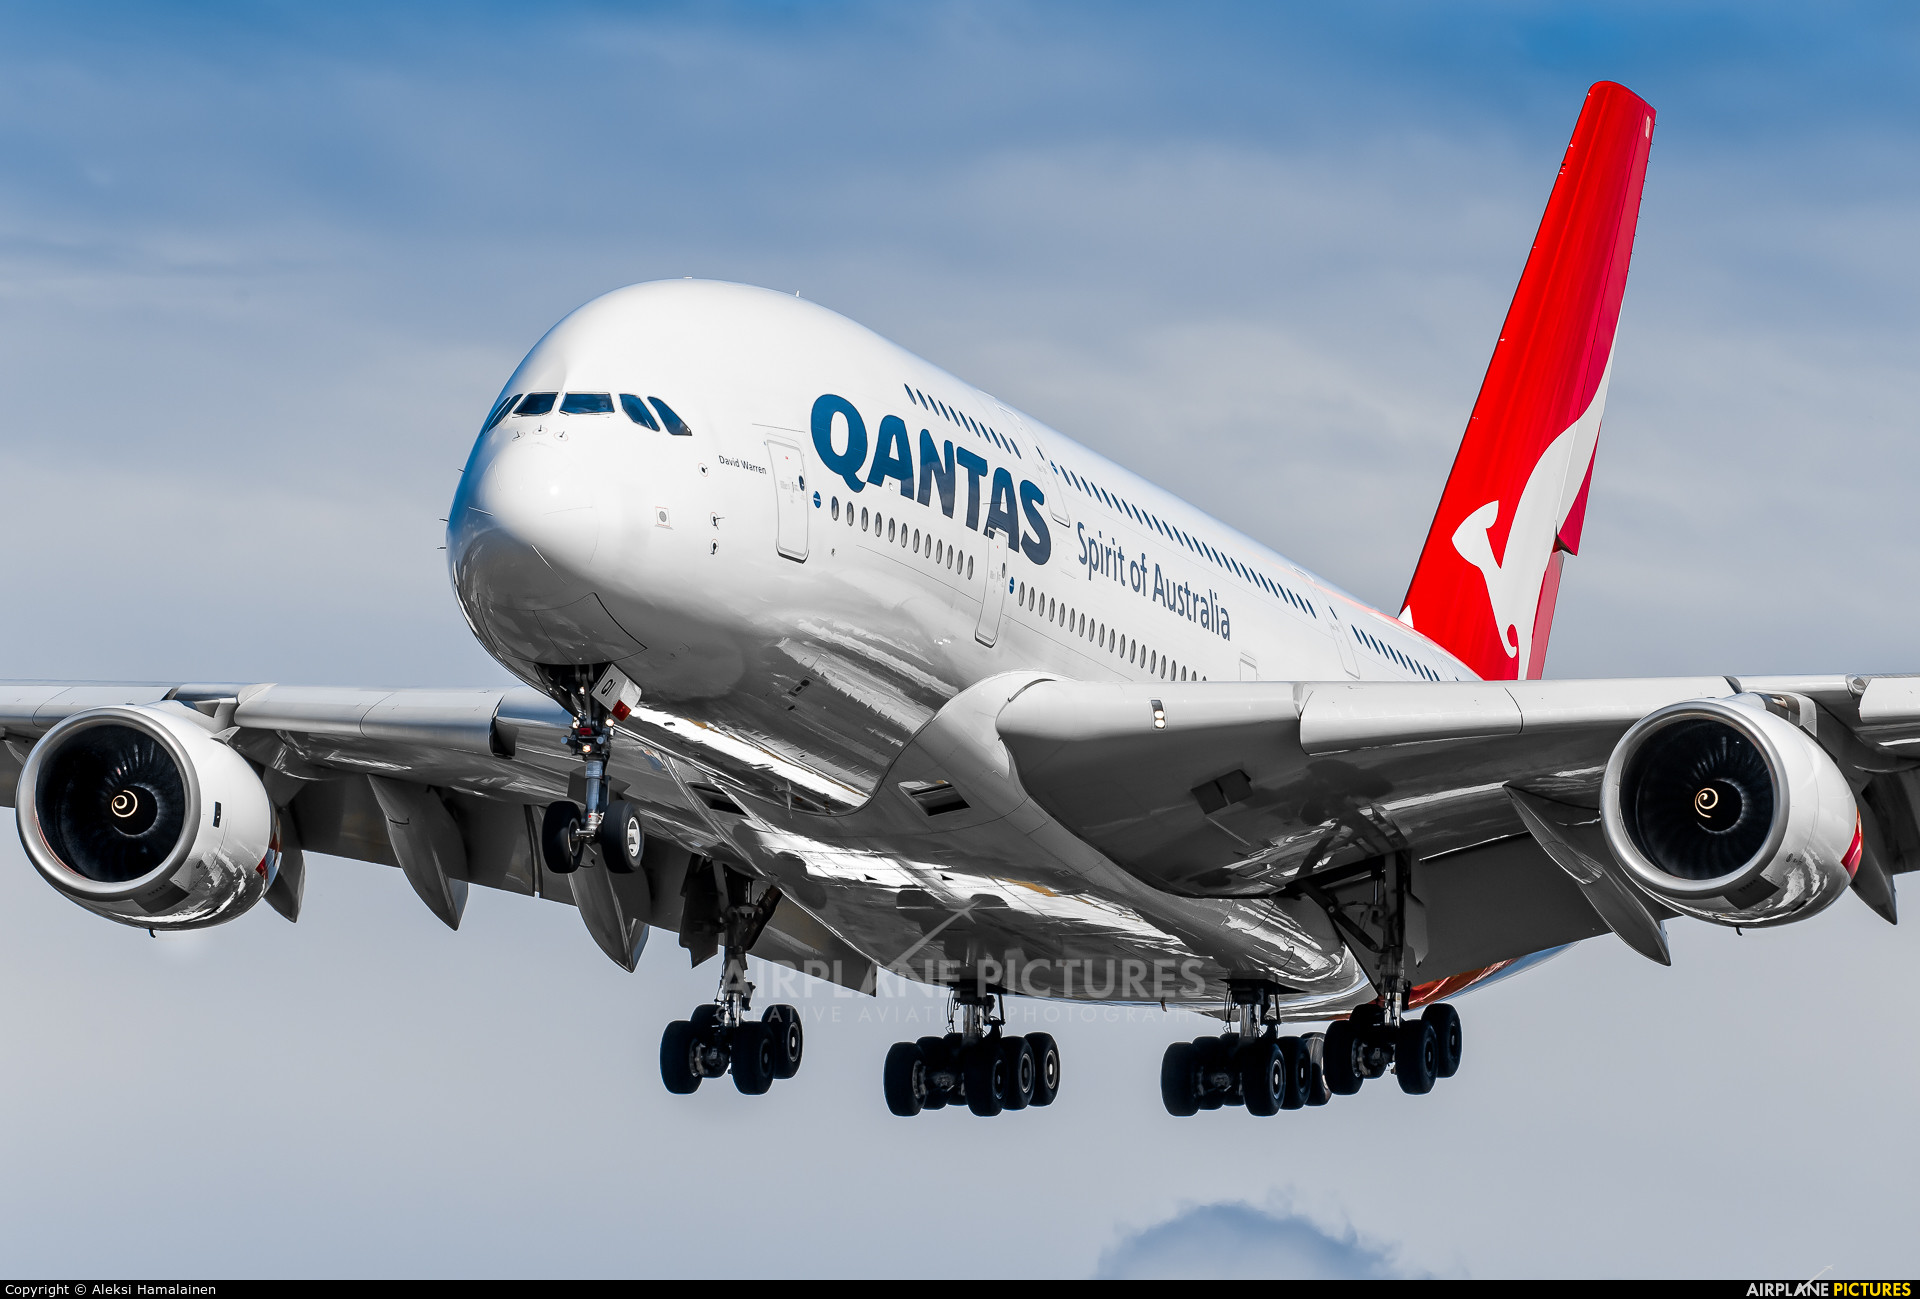 1920x1299 VH-OQI - QANTAS Airbus A380